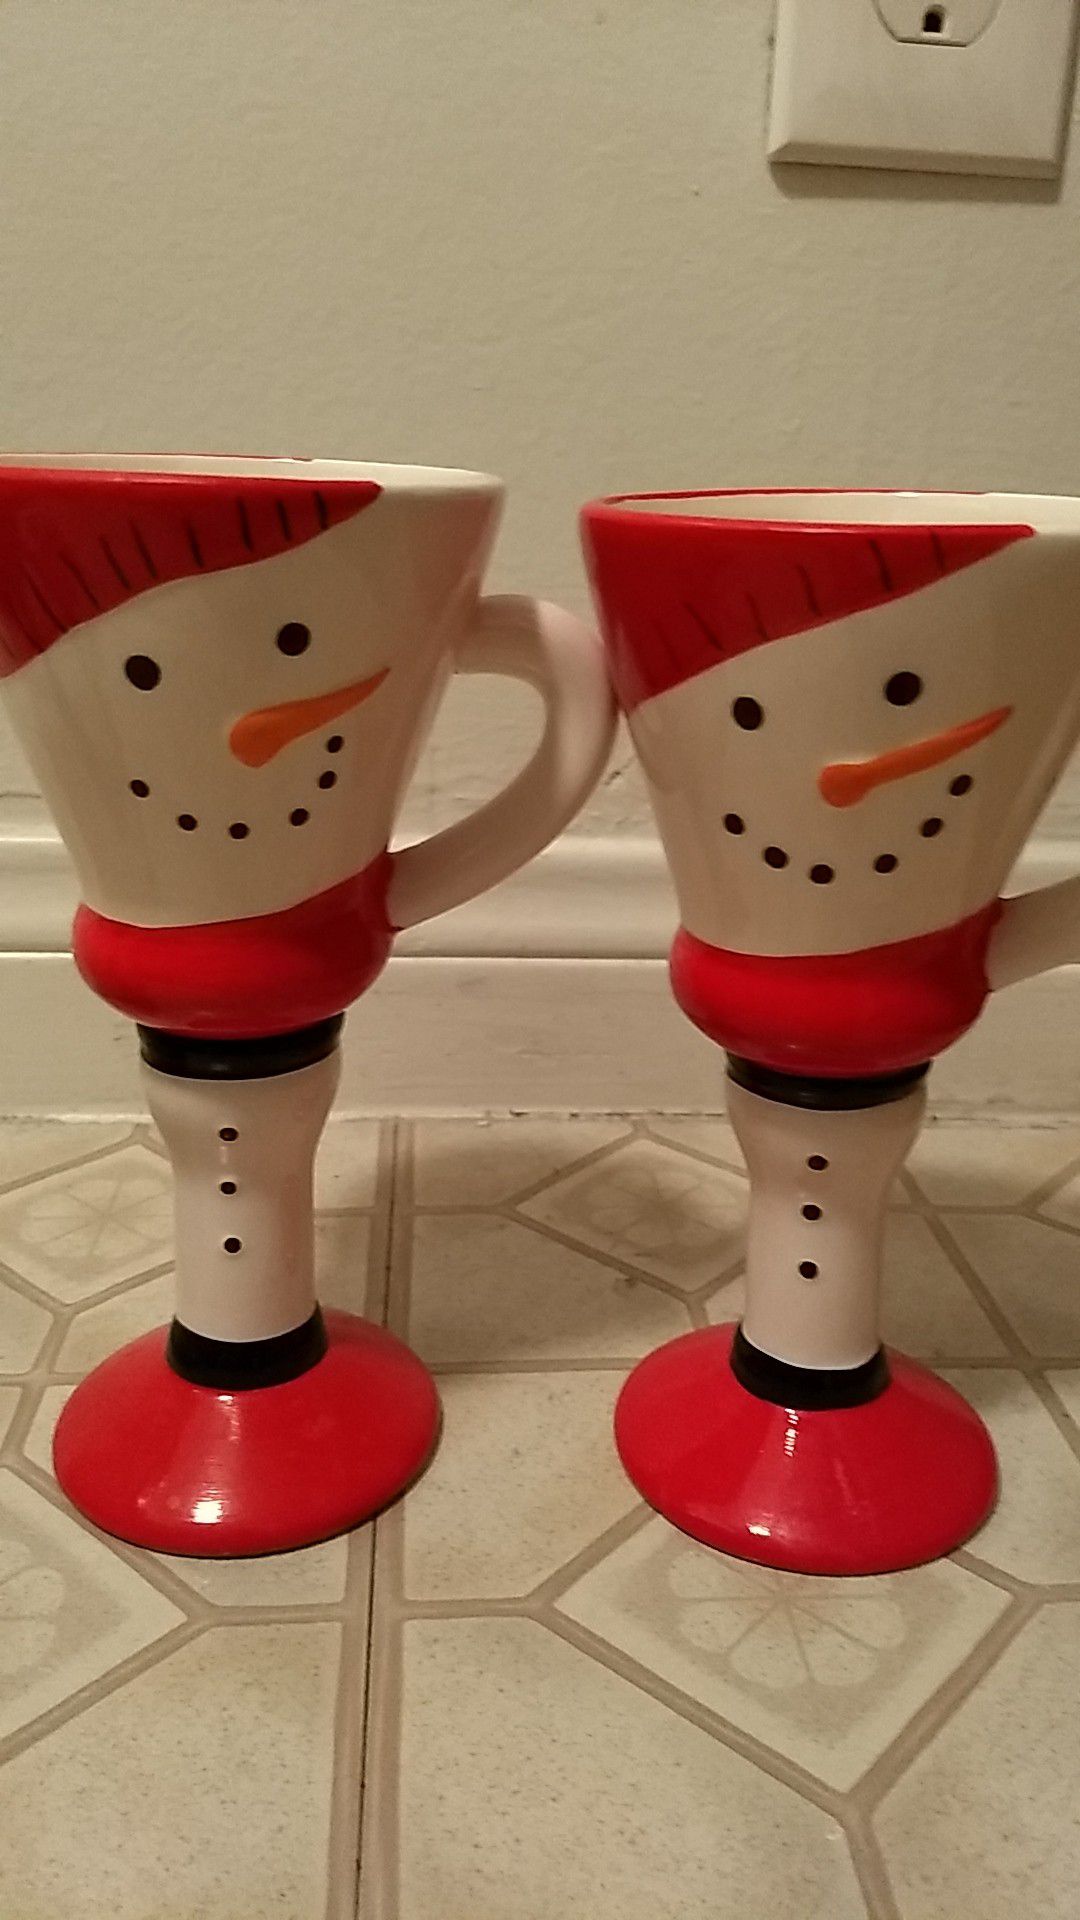 Snowman goblets